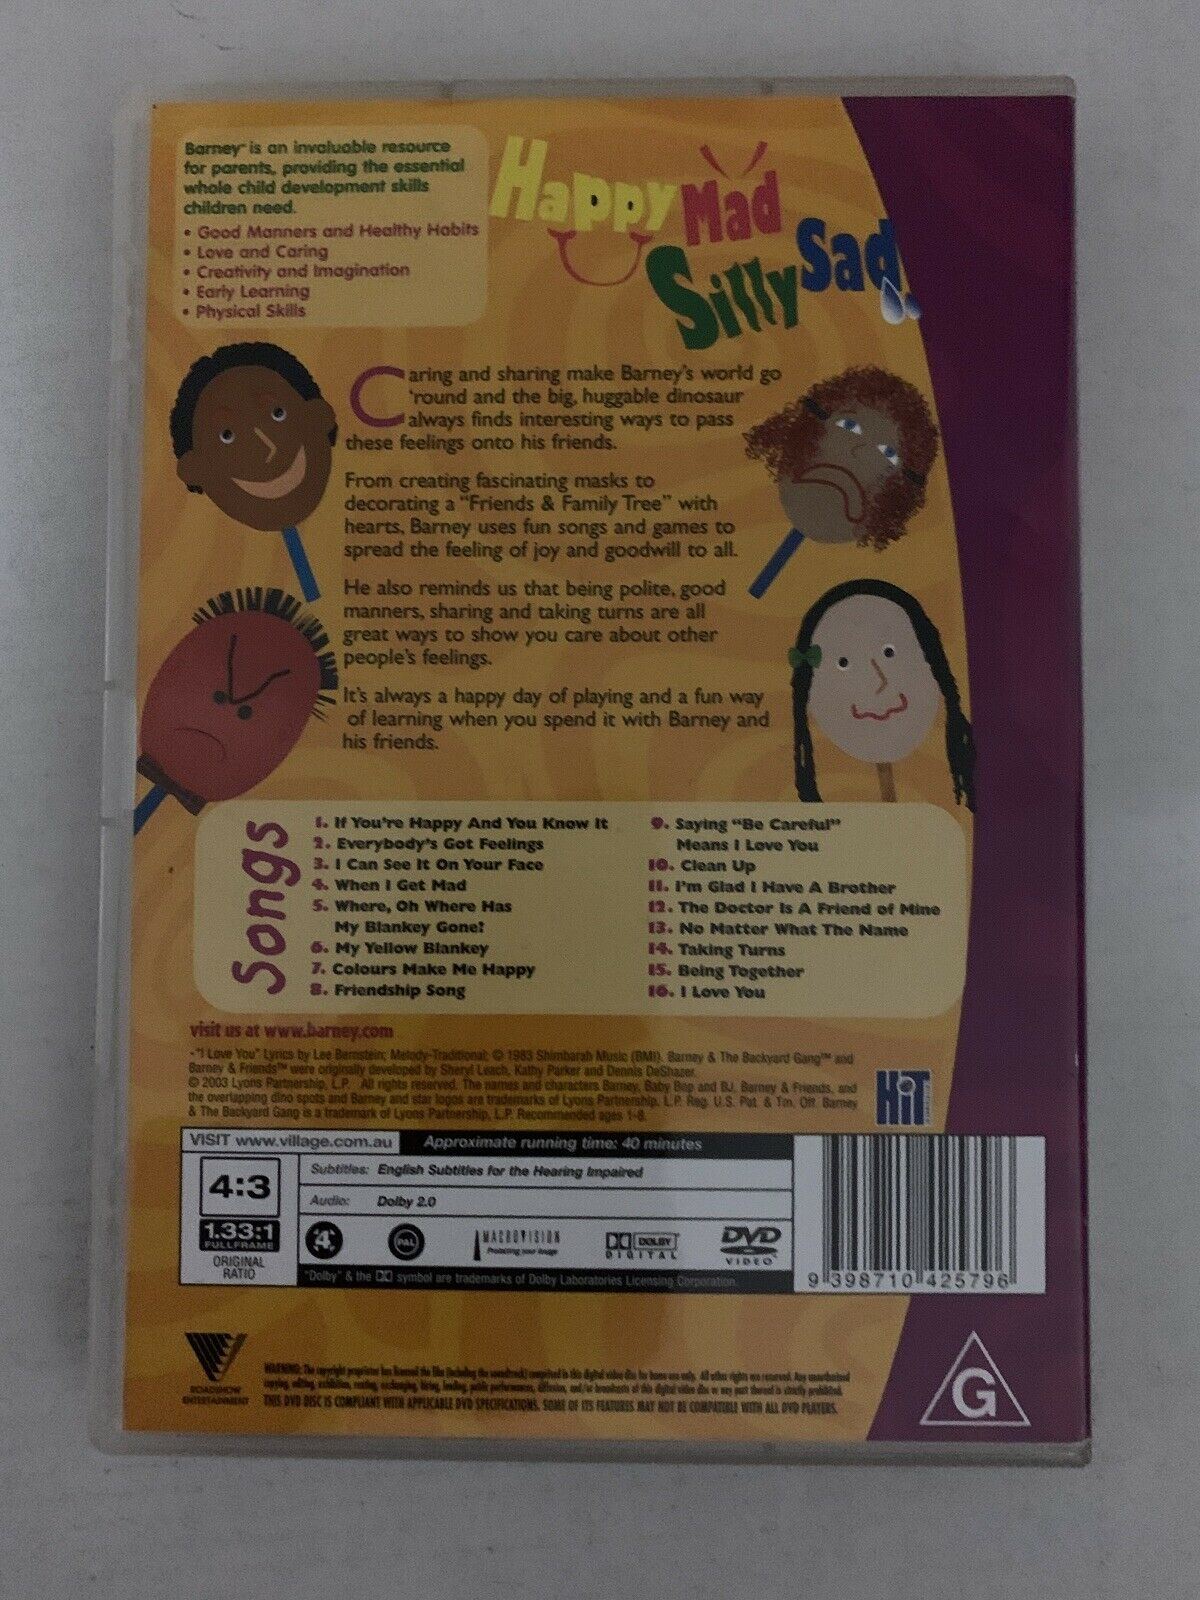 Barney - Happy, Mad, Silly, Sad (DVD, 2003) Region 4